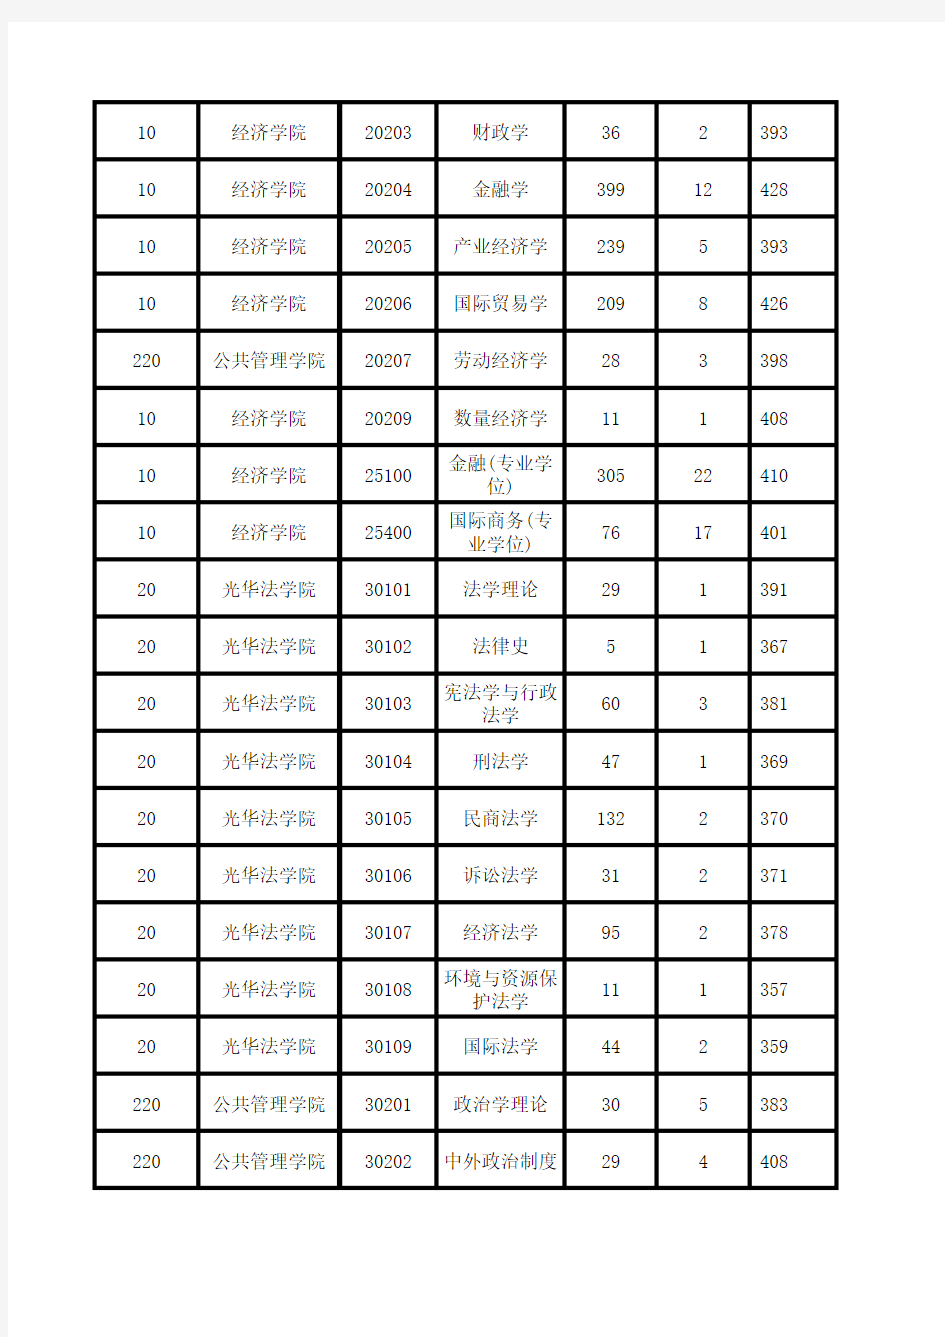 浙江大学xxxx年硕士报考录取人数统计表(按专业代码排序.xls